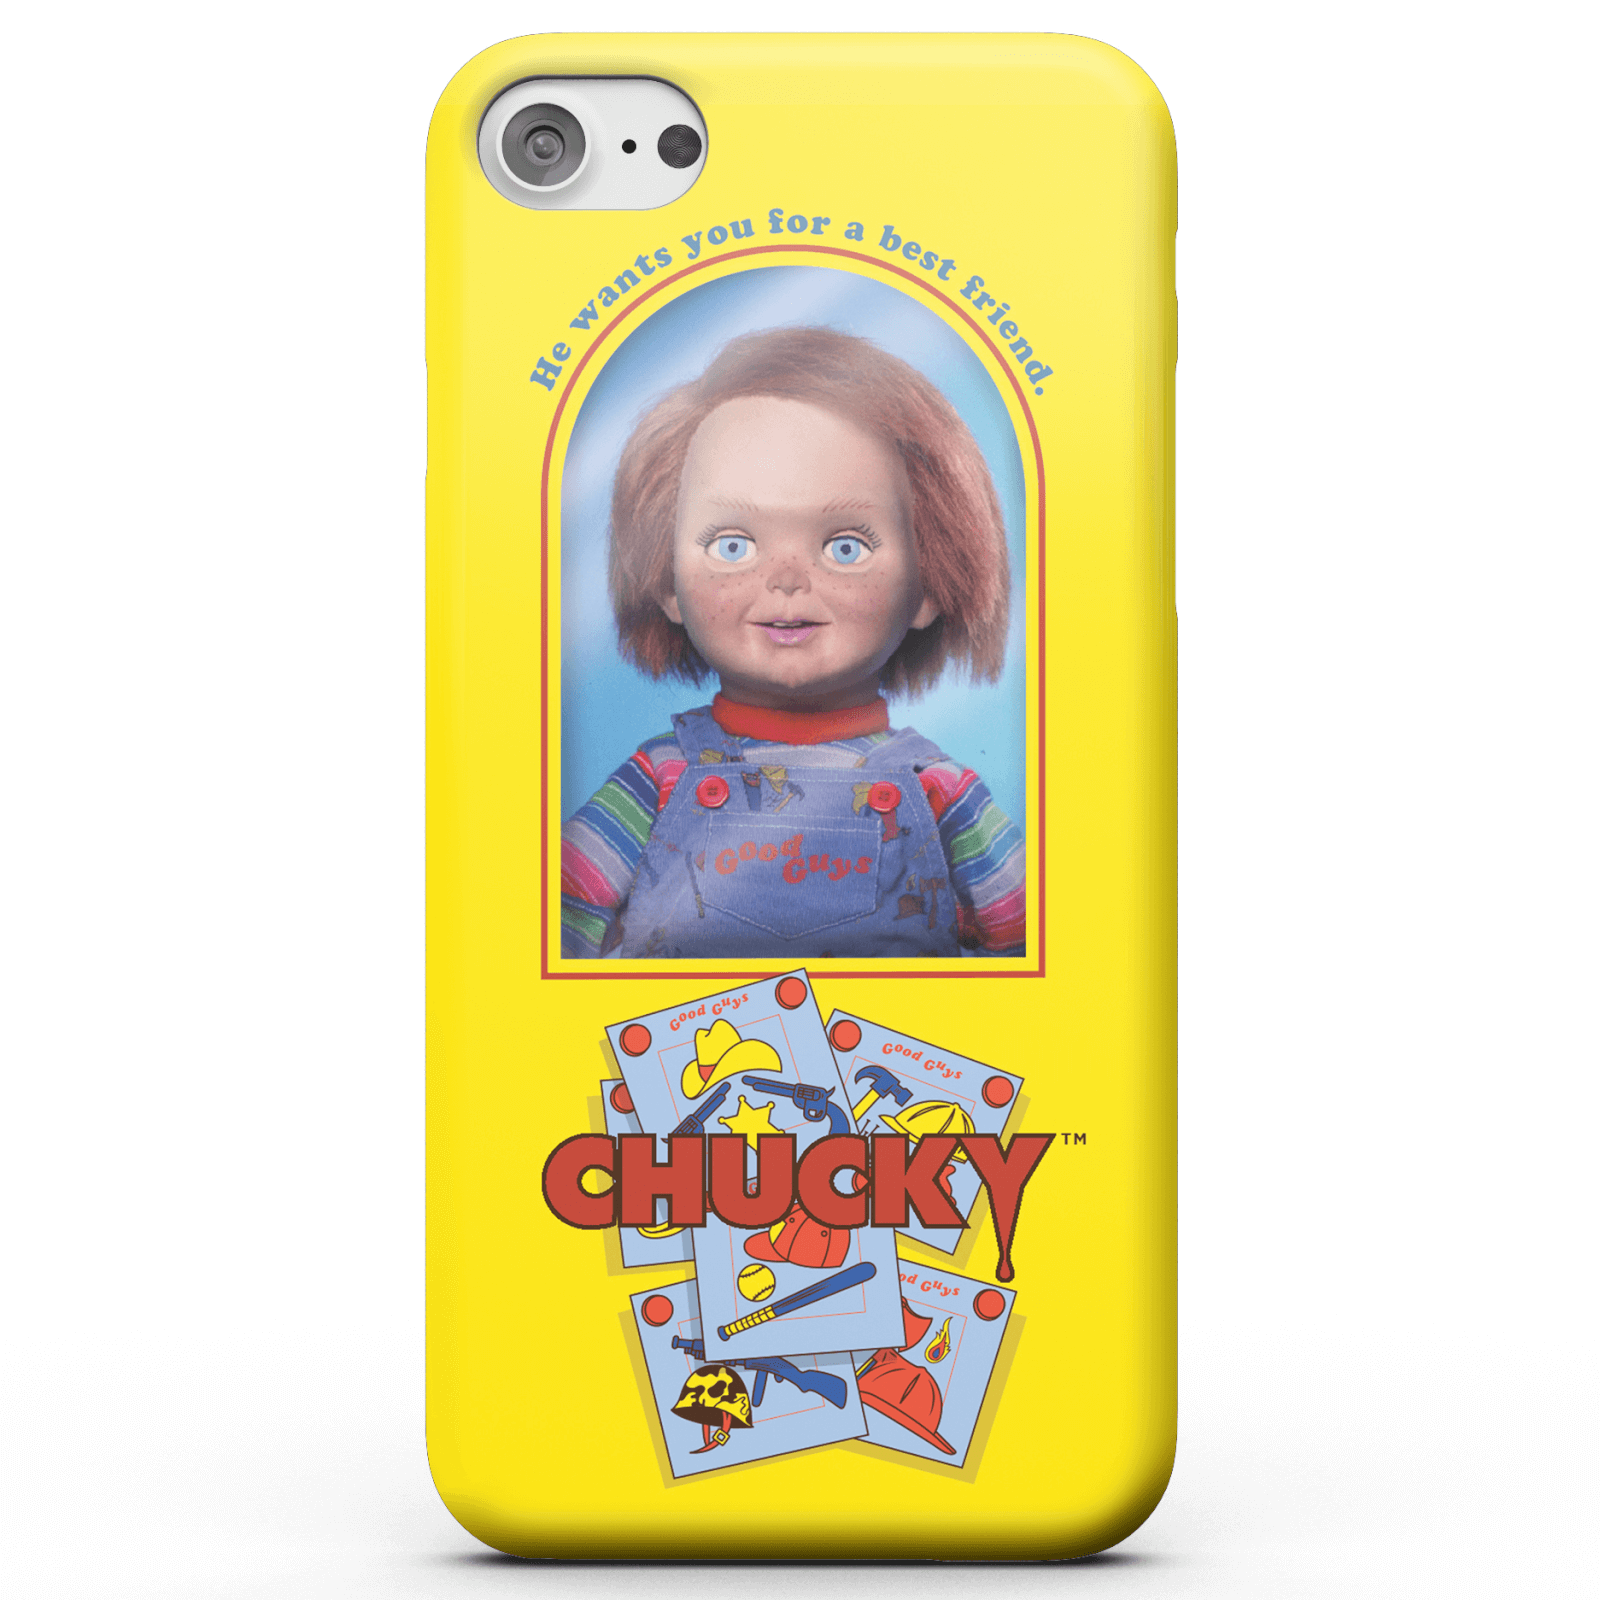 Chucky Good Guys Doll Smartphone Hülle für iPhone und Android - iPhone 5C - Snap Hülle Matt von Chucky